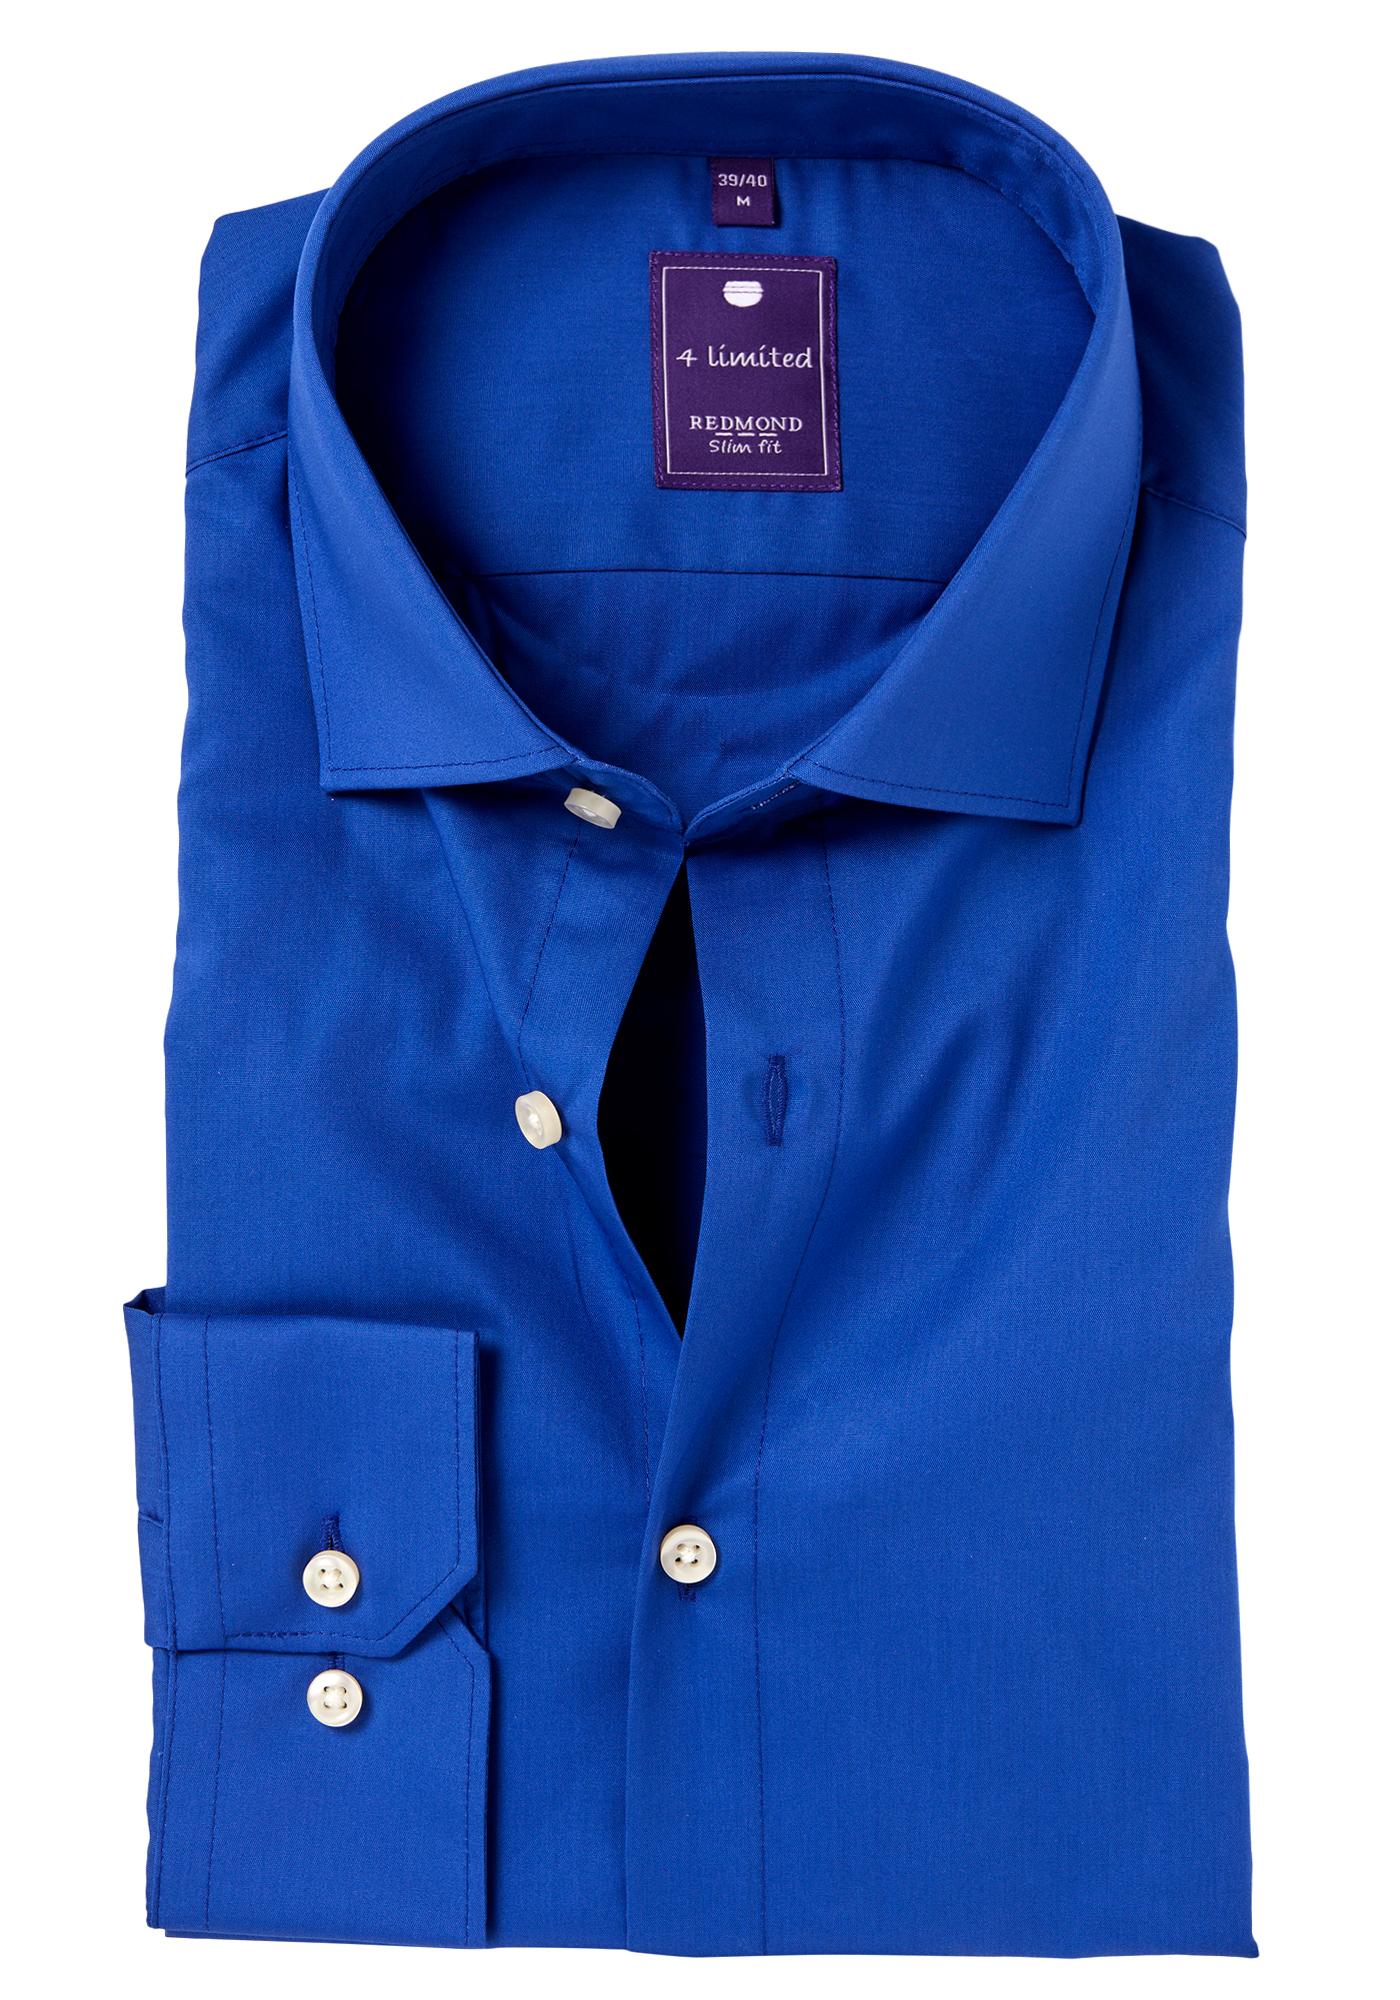 Wafel Hulpeloosheid Instituut Redmond slim fit overhemd, kobaltblauw - Shop de nieuwste voorjaarsmode